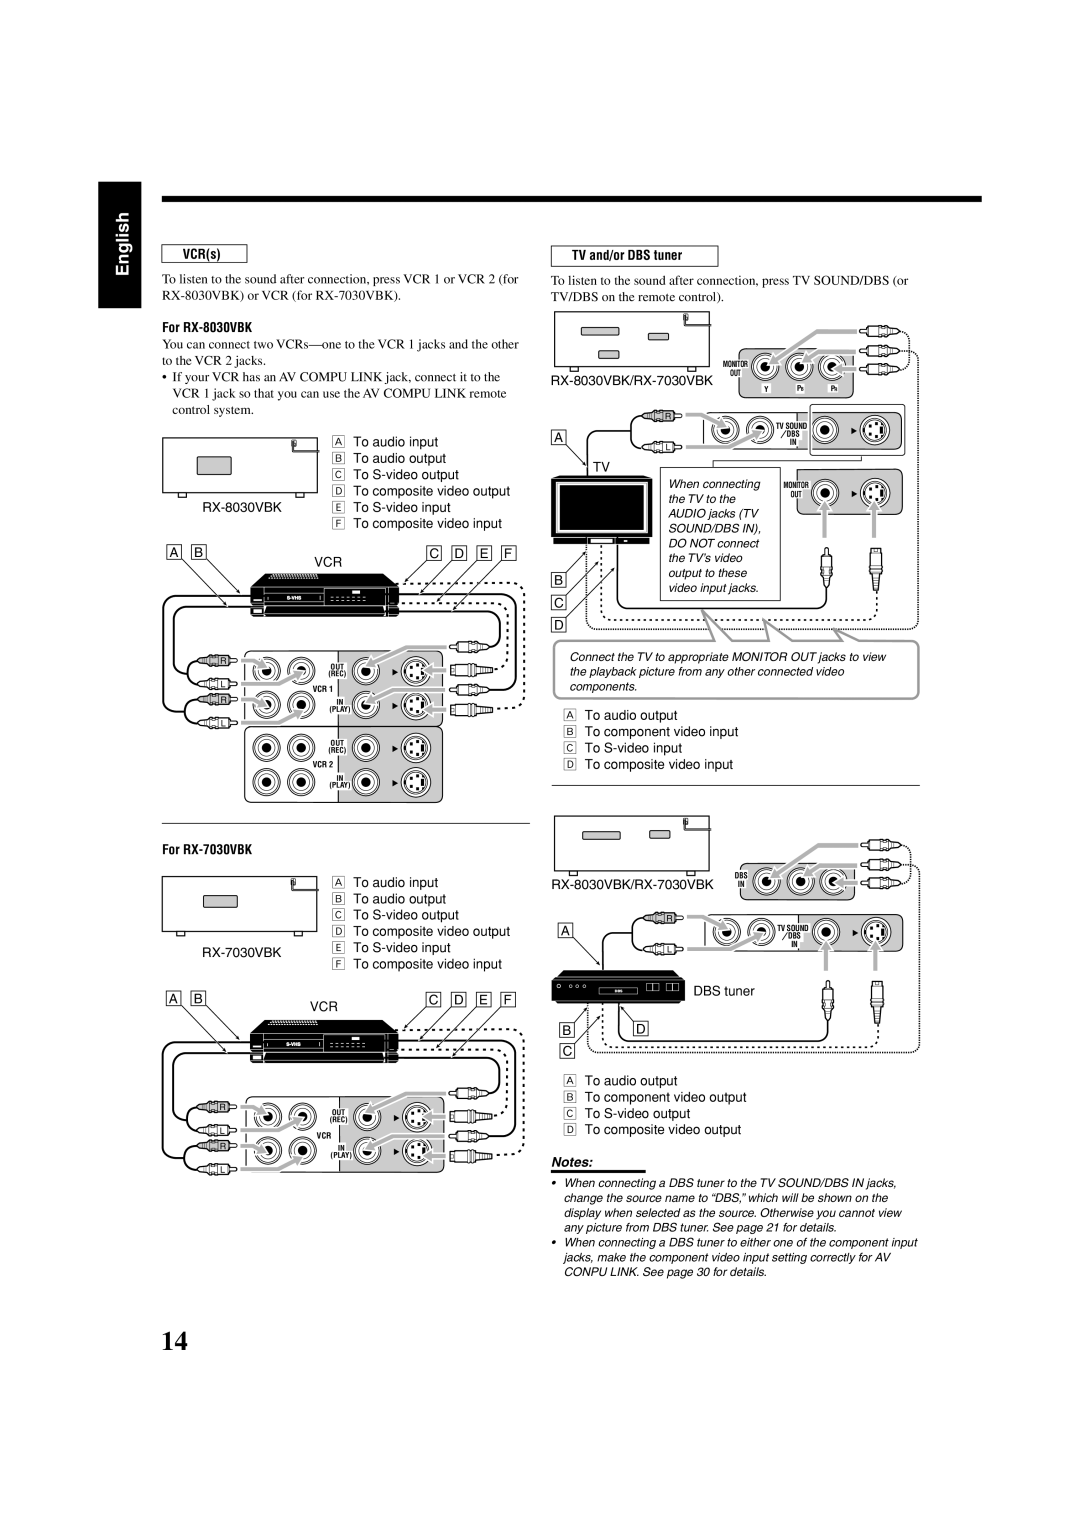 JVC RX7030VBK manual English, VCRs, For RX-8030VBK, TV and/or DBS tuner, RX-8030VBK/RX-7030VBK, For RX-7030VBK, Notes 